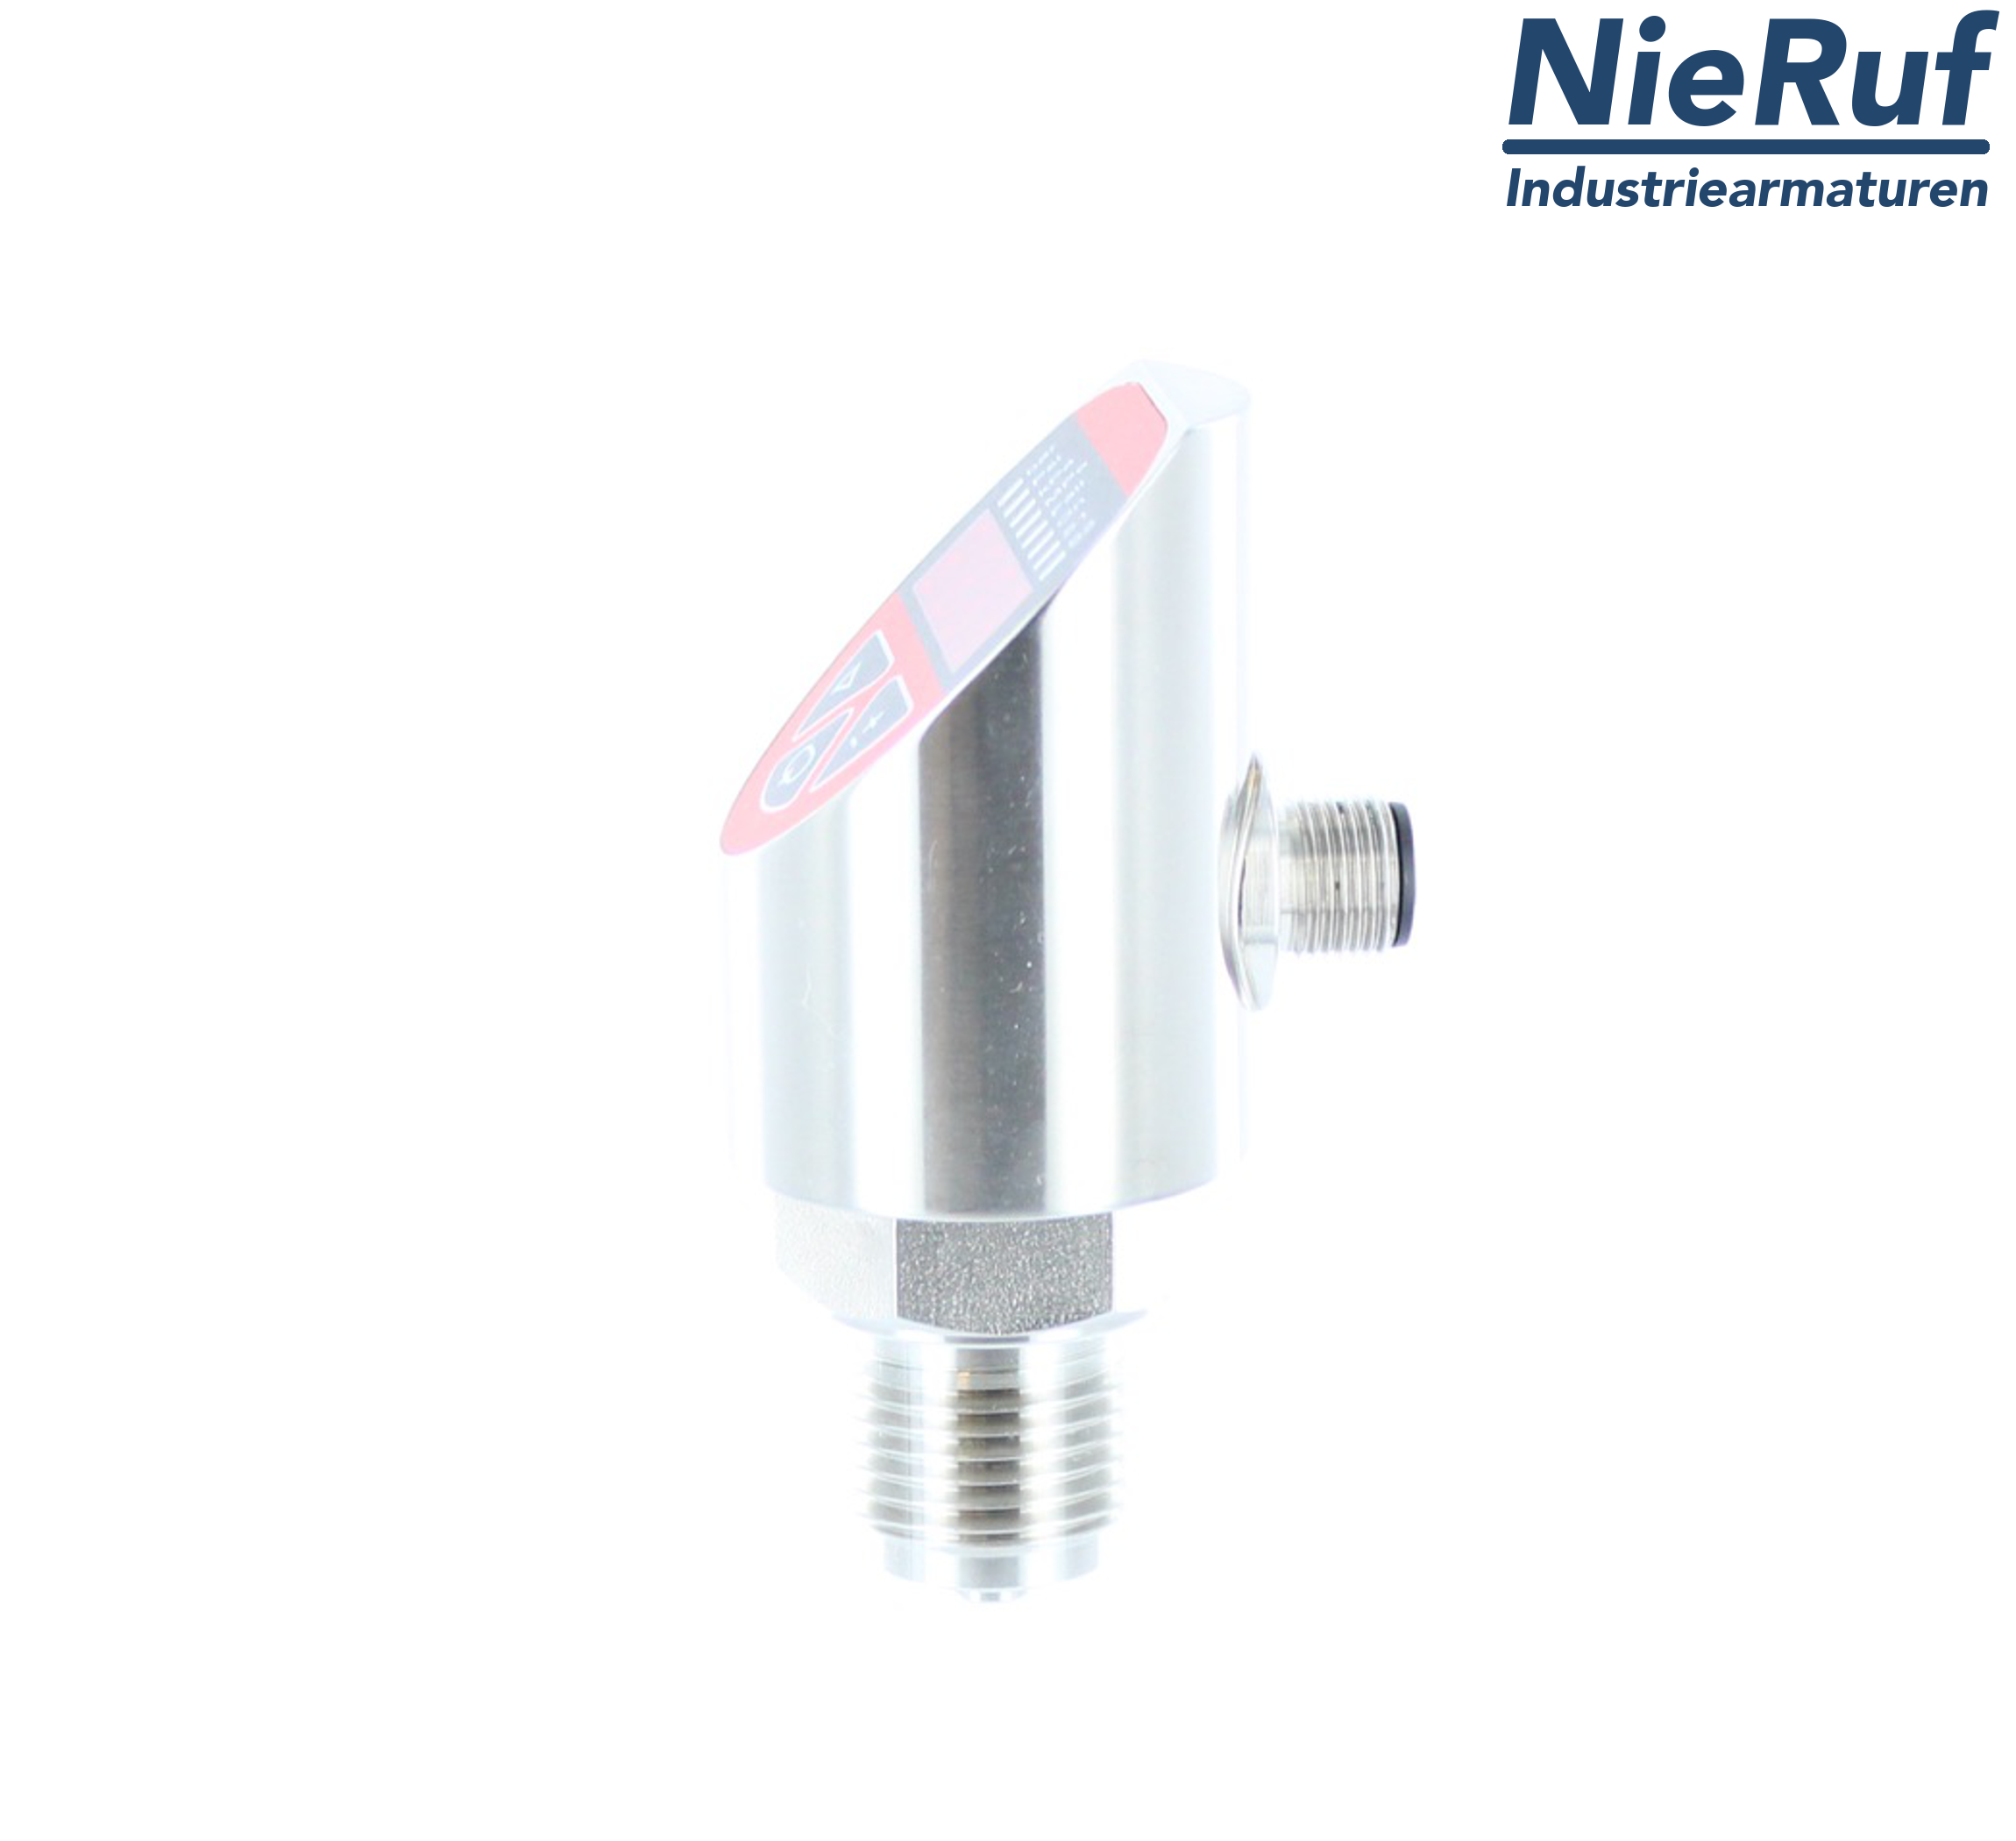 digital pressure sensor G 1/2" B IB 5-wire: 2xPNP, 1x4 - 20mA FPM 0,0 - 250,0 bar